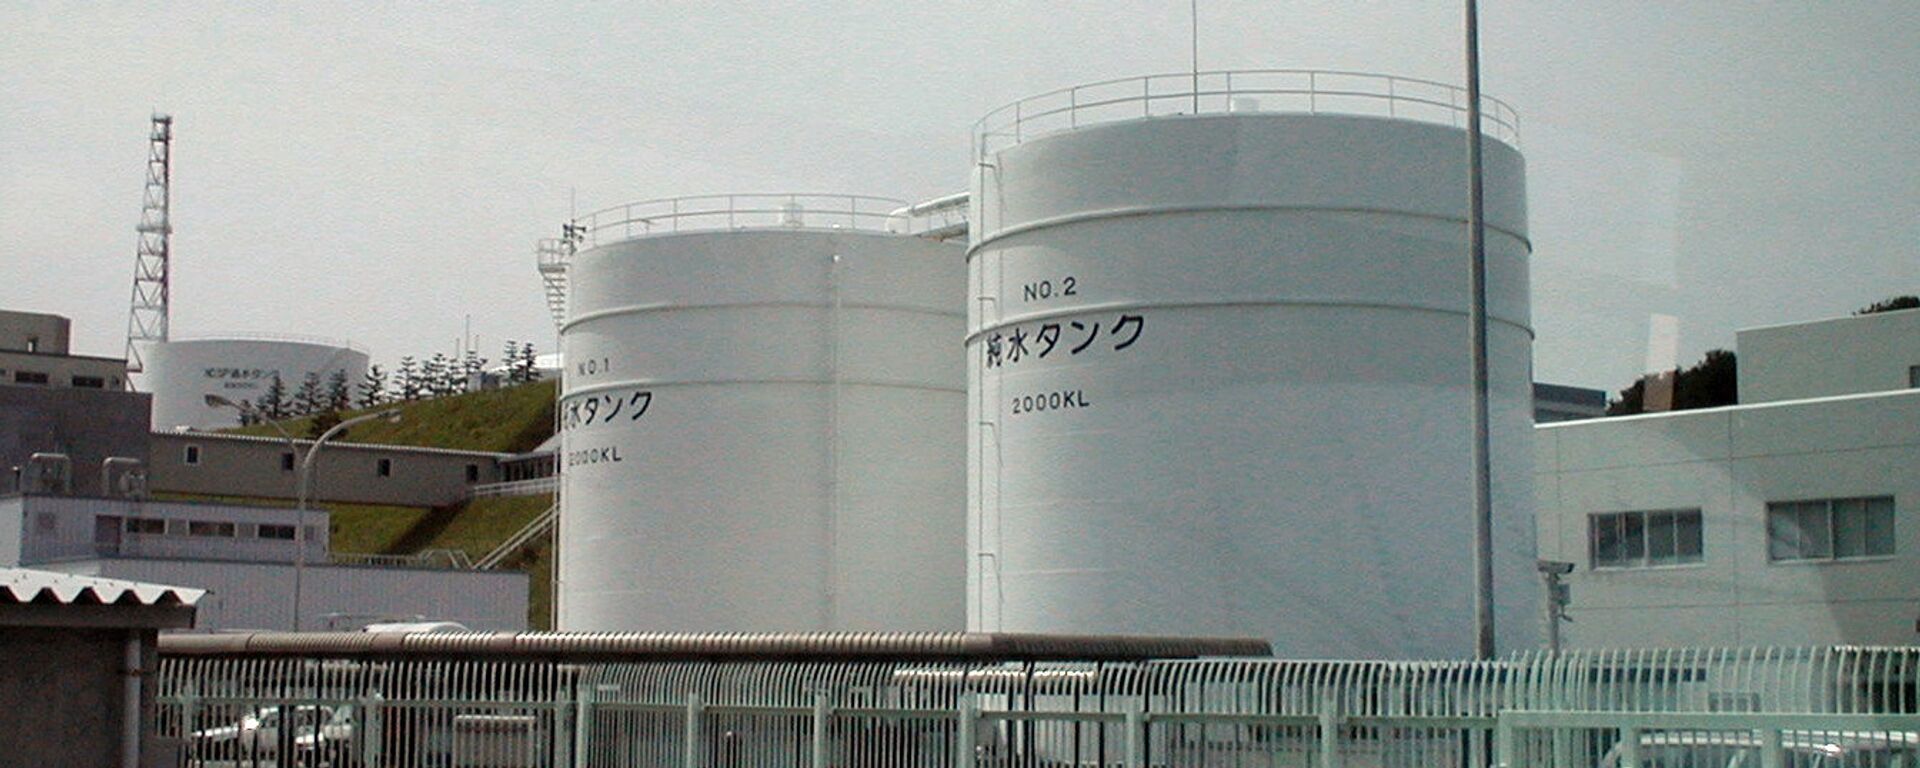 La planta japonesa de Fukushima. - Sputnik Mundo, 1920, 24.08.2022